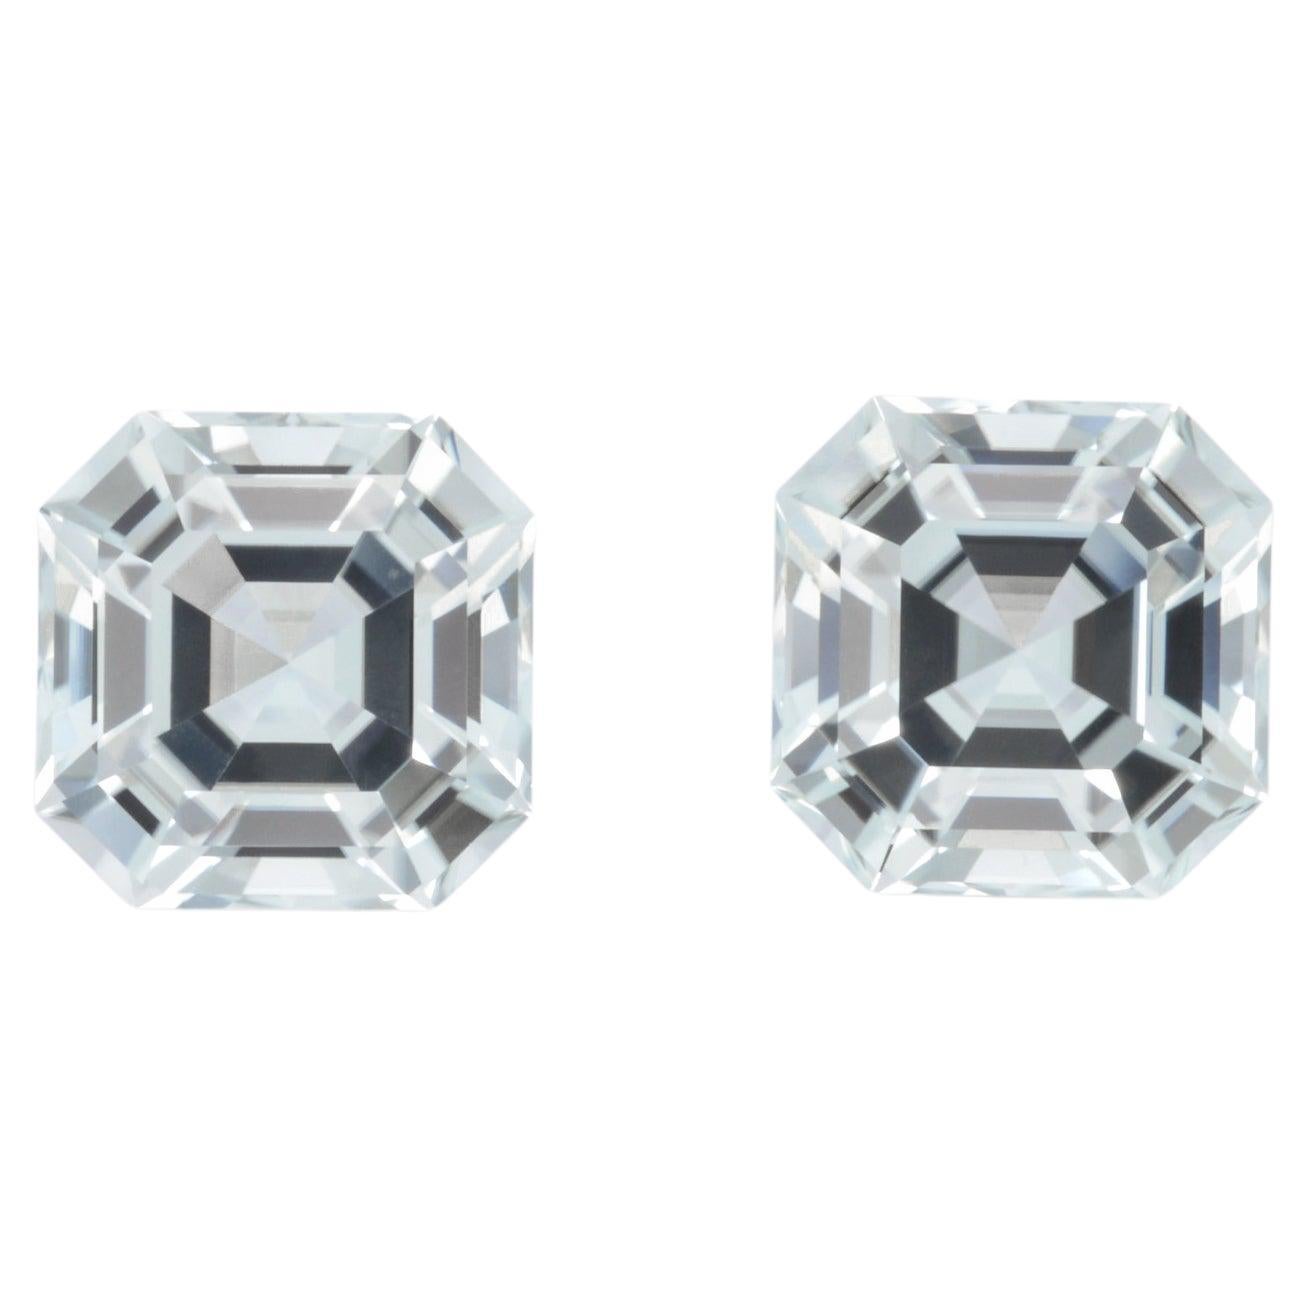 Tourmaline Earrings Gemstone Pair 11.26 Carat Unset Asscher Cut Loose Gems